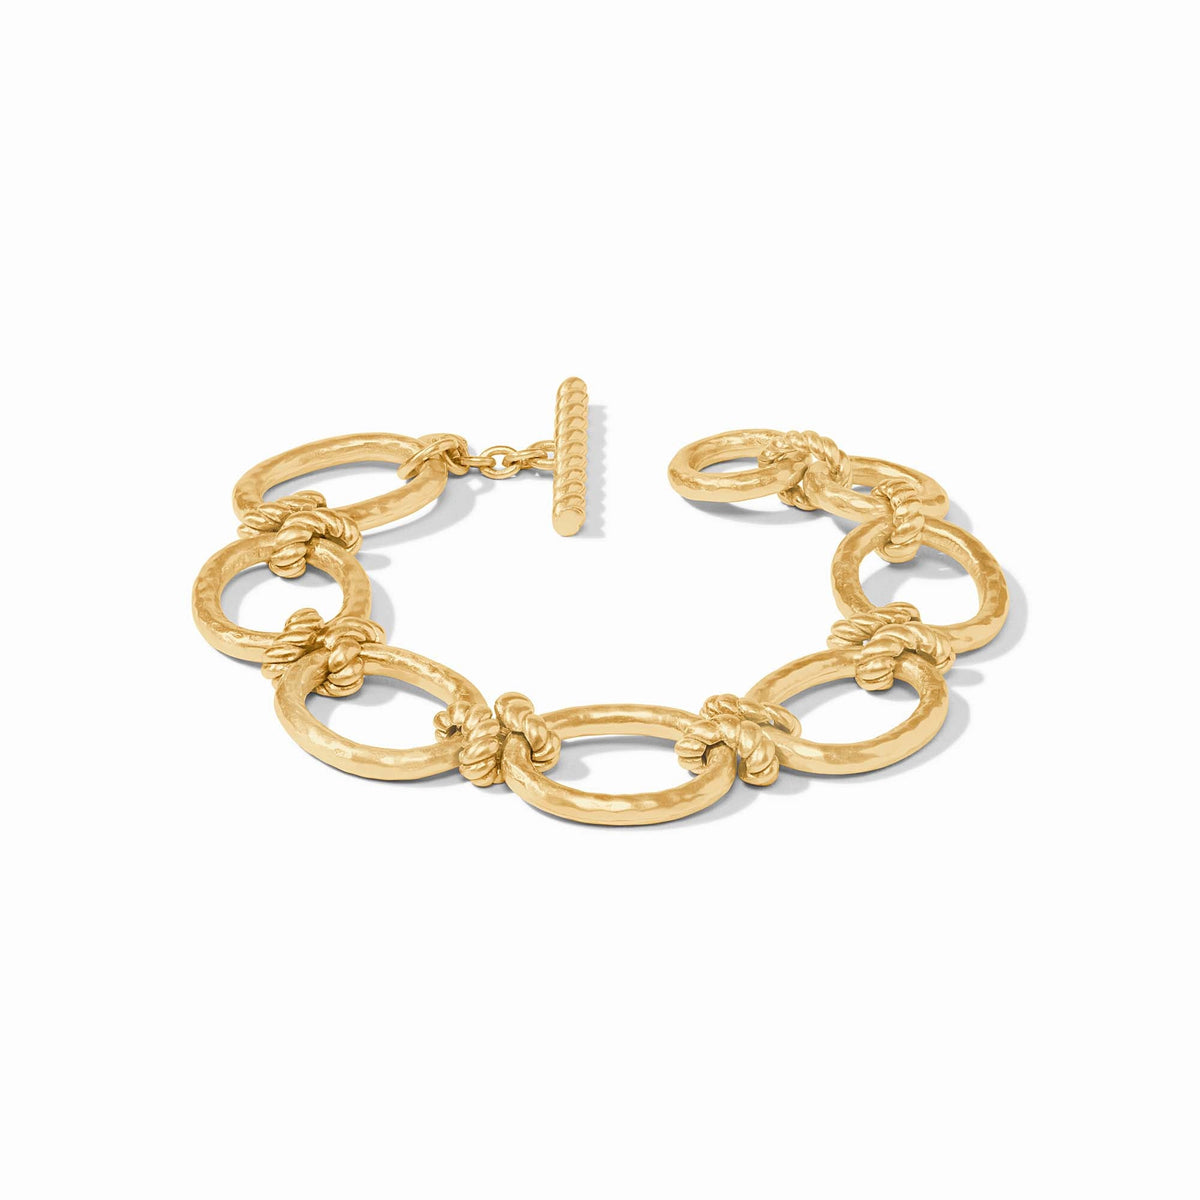 Julie Vos - Nassau Link Bracelet, Gold